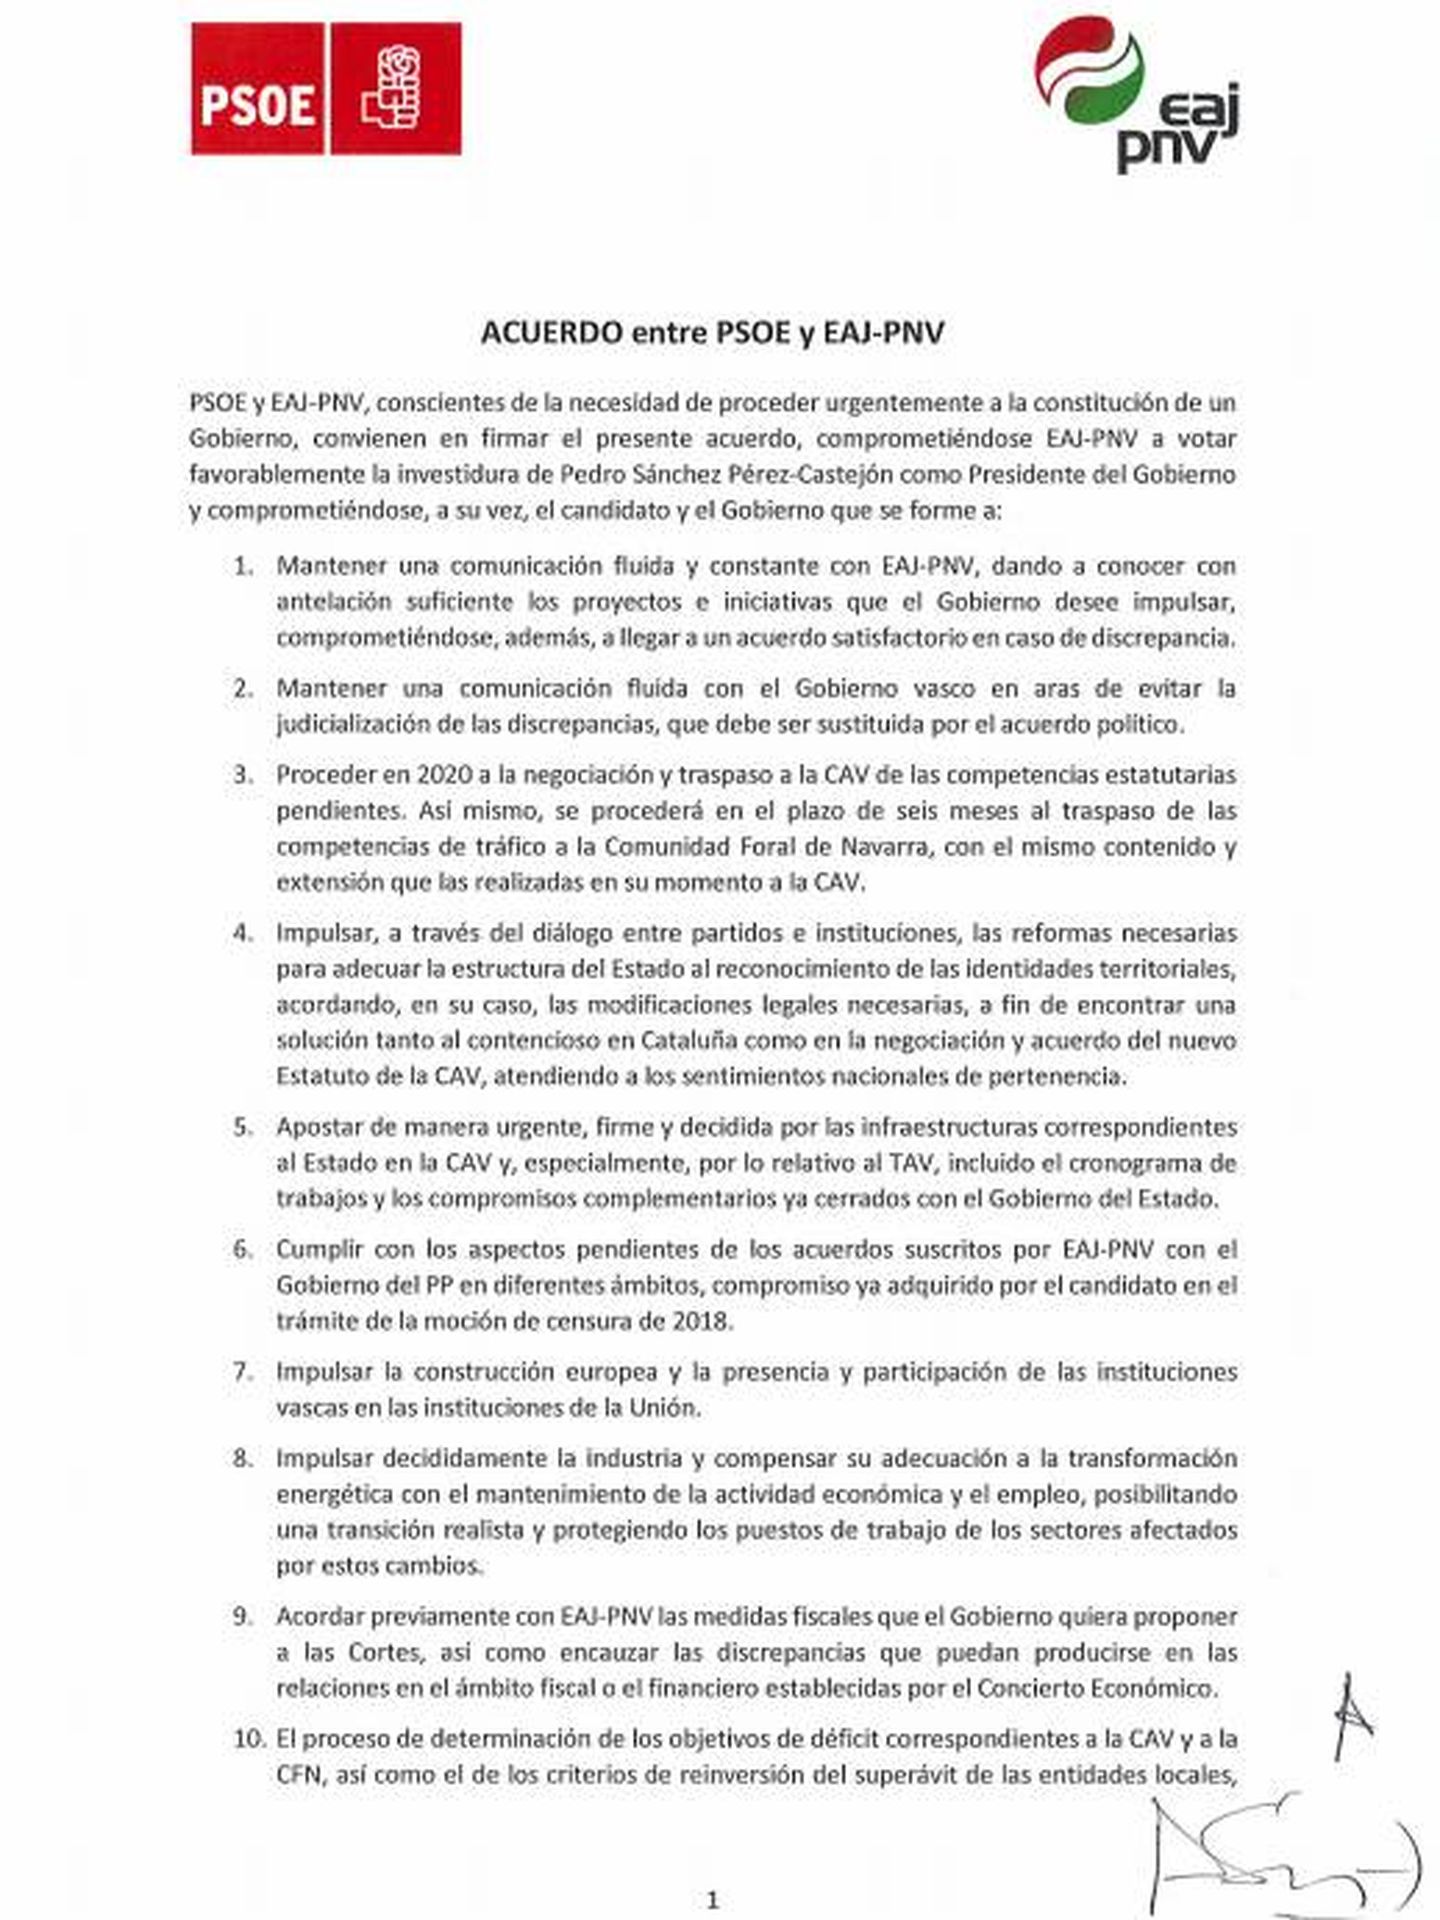 Consulta aquí el acuerdo firmado por el PSOE y el PNV.